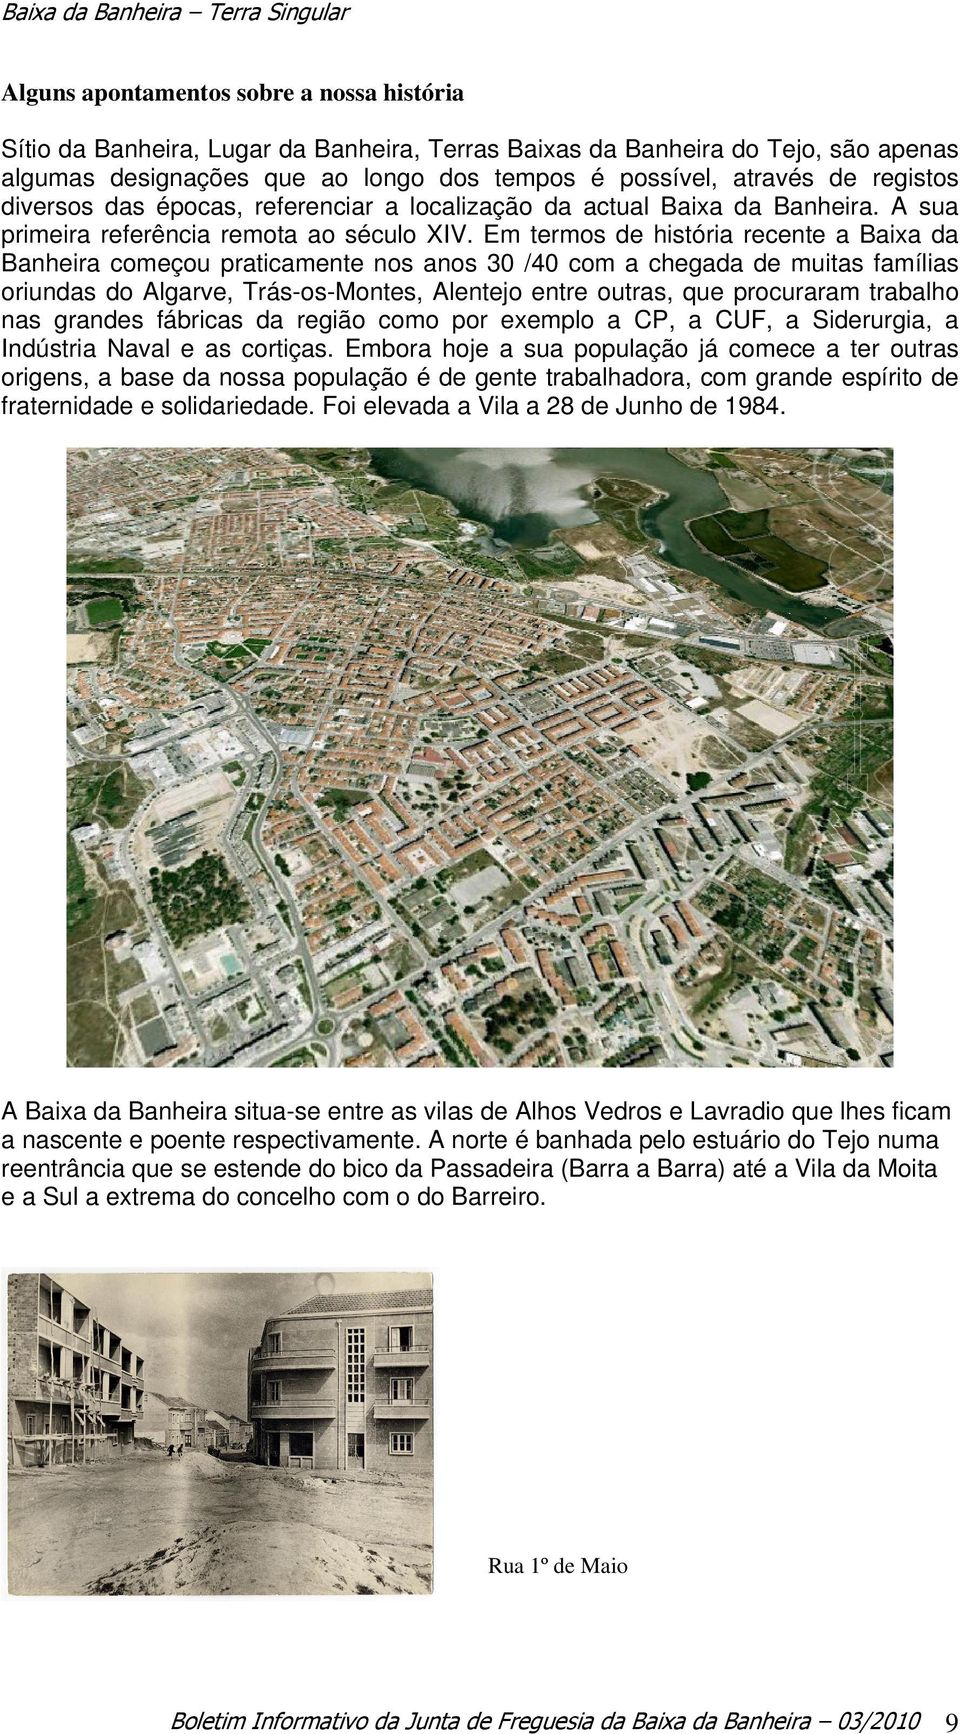 Em termos de história recente a Baixa da Banheira começou praticamente nos anos 30 /40 com a chegada de muitas famílias oriundas do Algarve, Trás-os-Montes, Alentejo entre outras, que procuraram